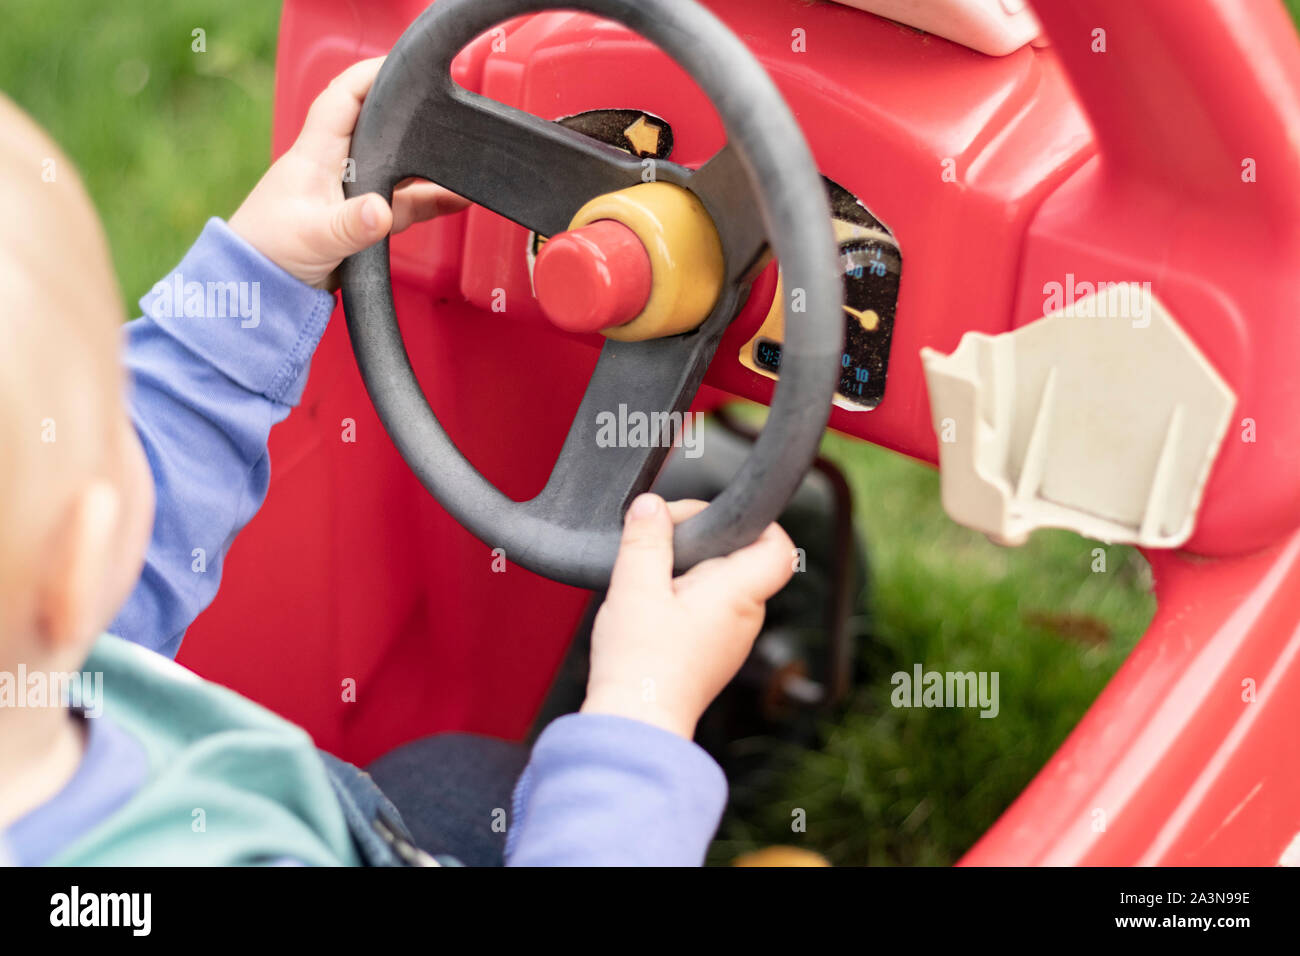 Kleines Kind mit Händen am Lenkrad des Spielzeugautos Stockfotografie -  Alamy